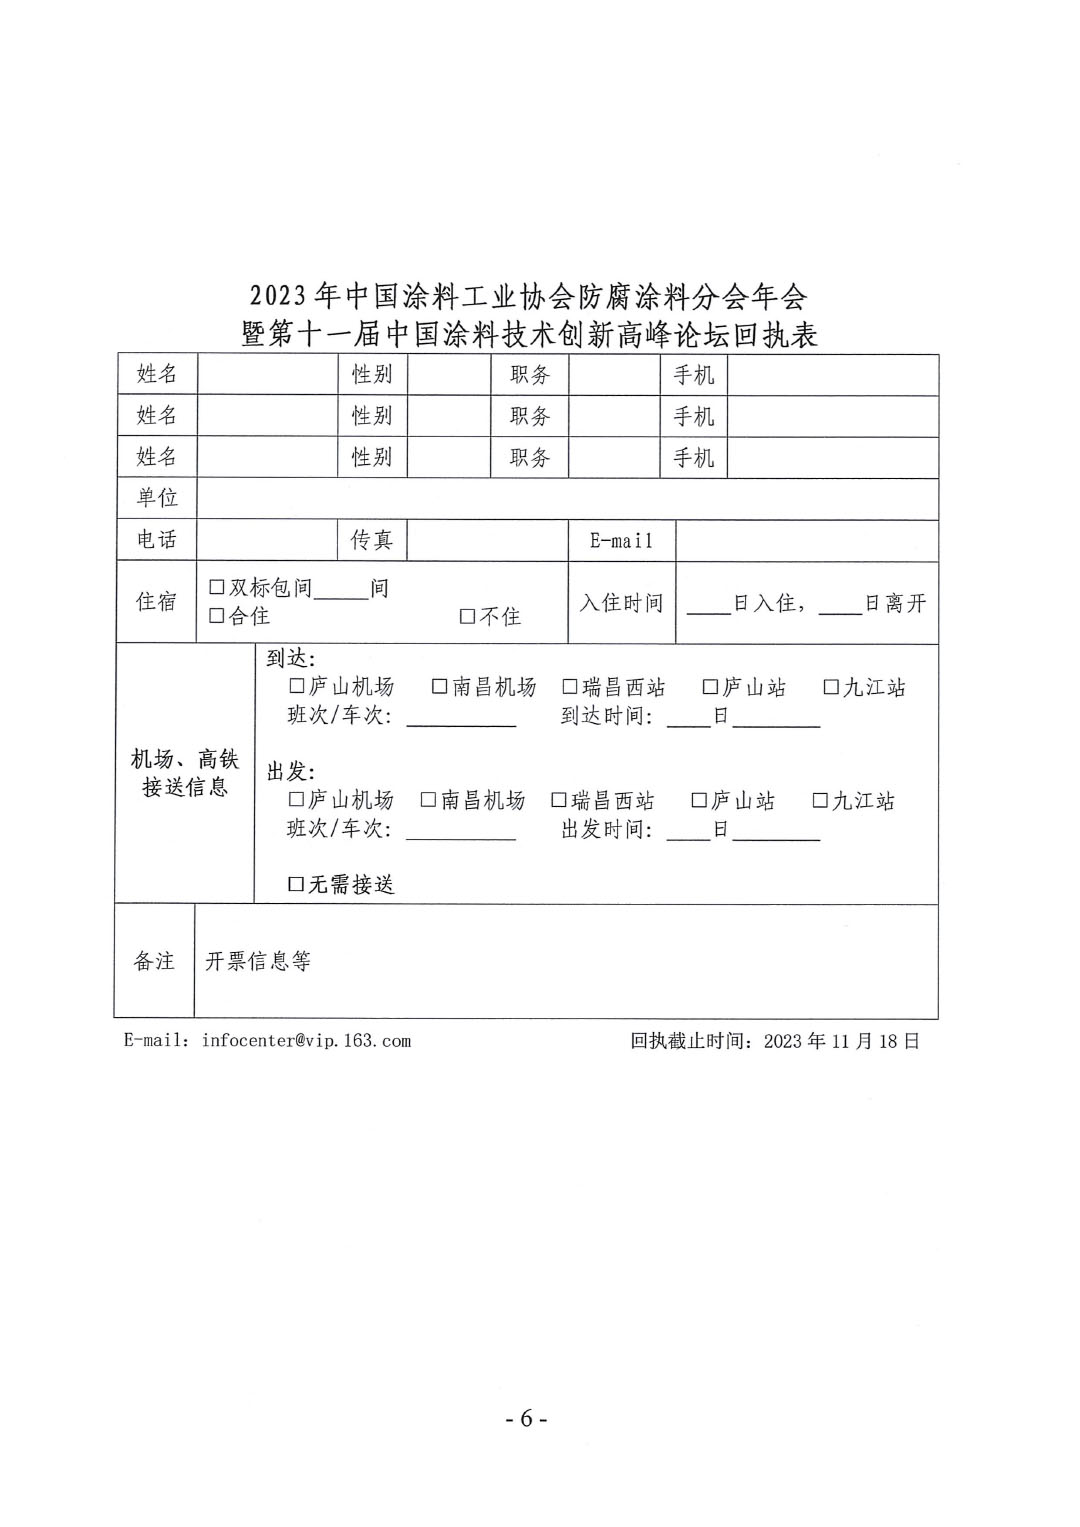 2023年中国涂料工业协会防腐涂料分会年会通知-6